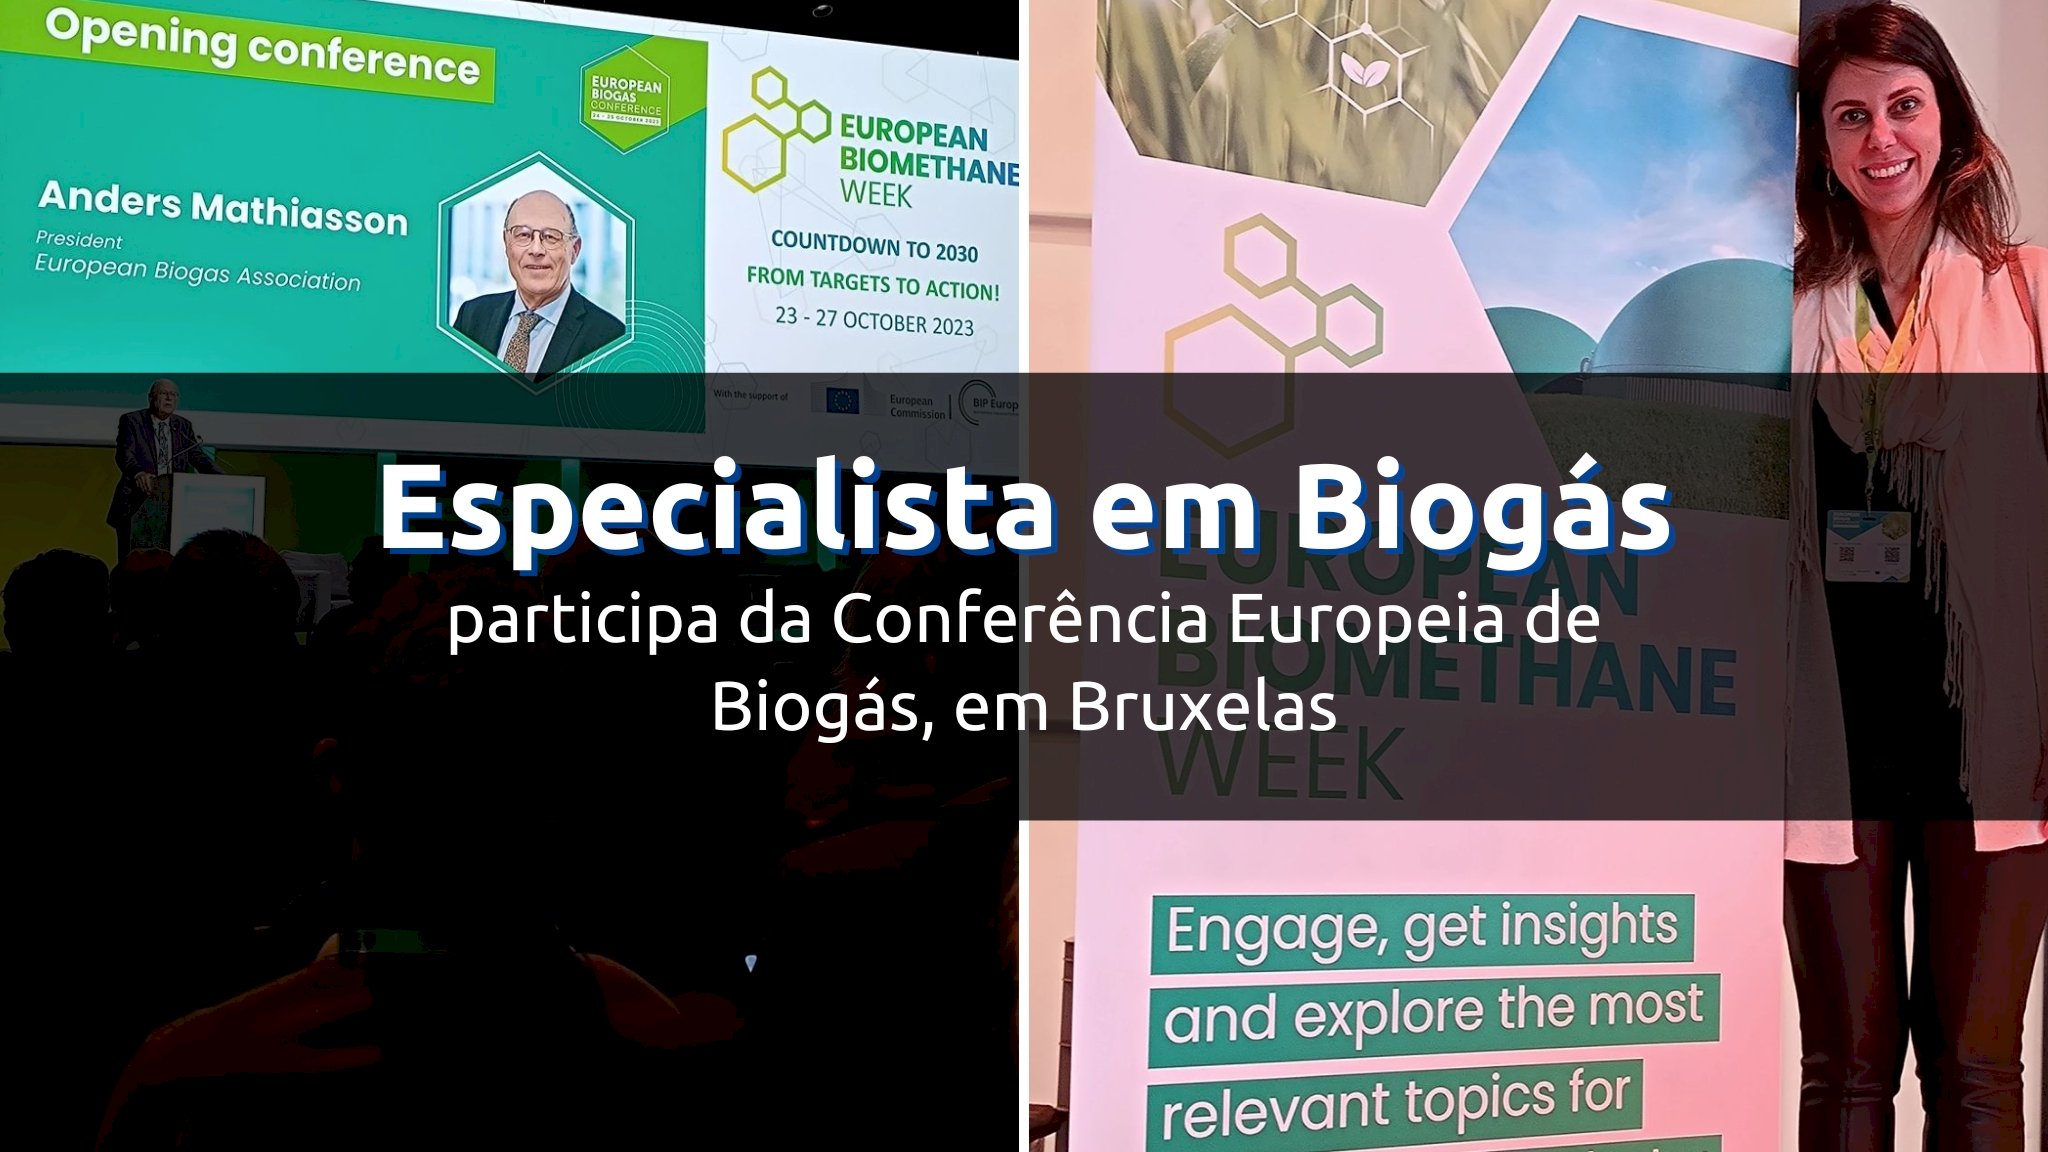 Brasileira especialista em Biogás participa da Conferência Europeia de Biogás, em Bruxelas